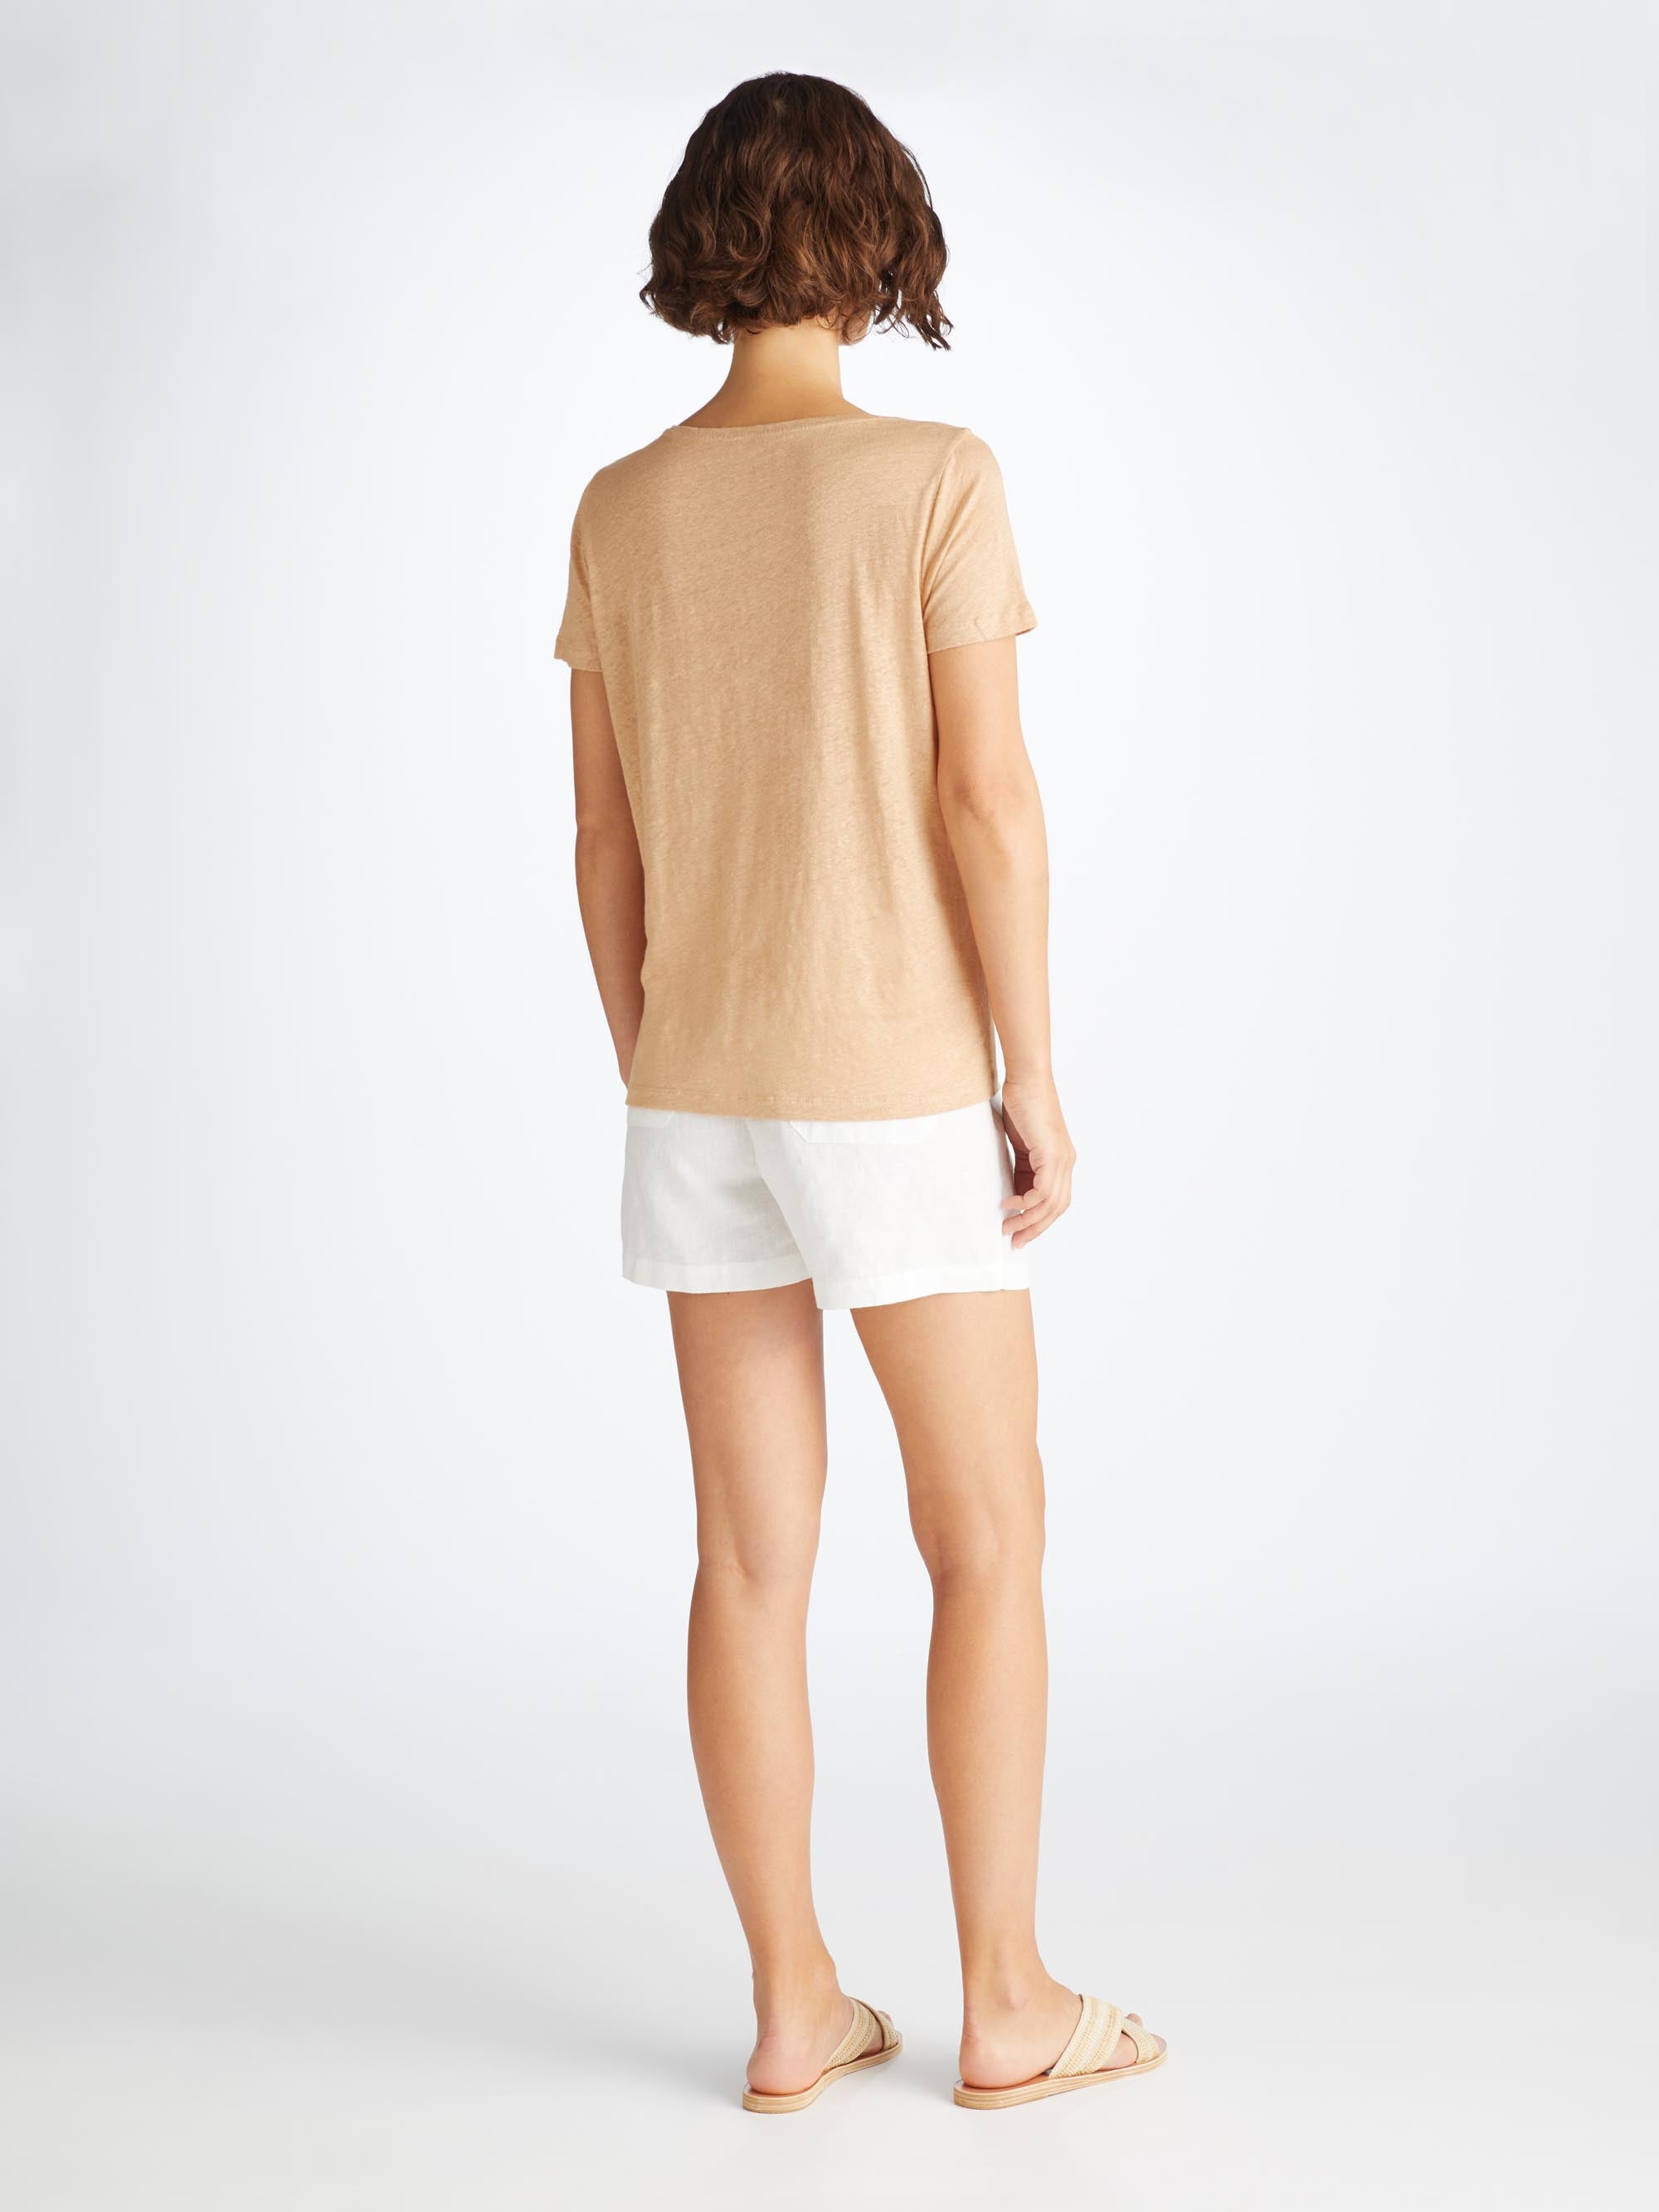 Women's T-Shirt Jordan Linen Sand